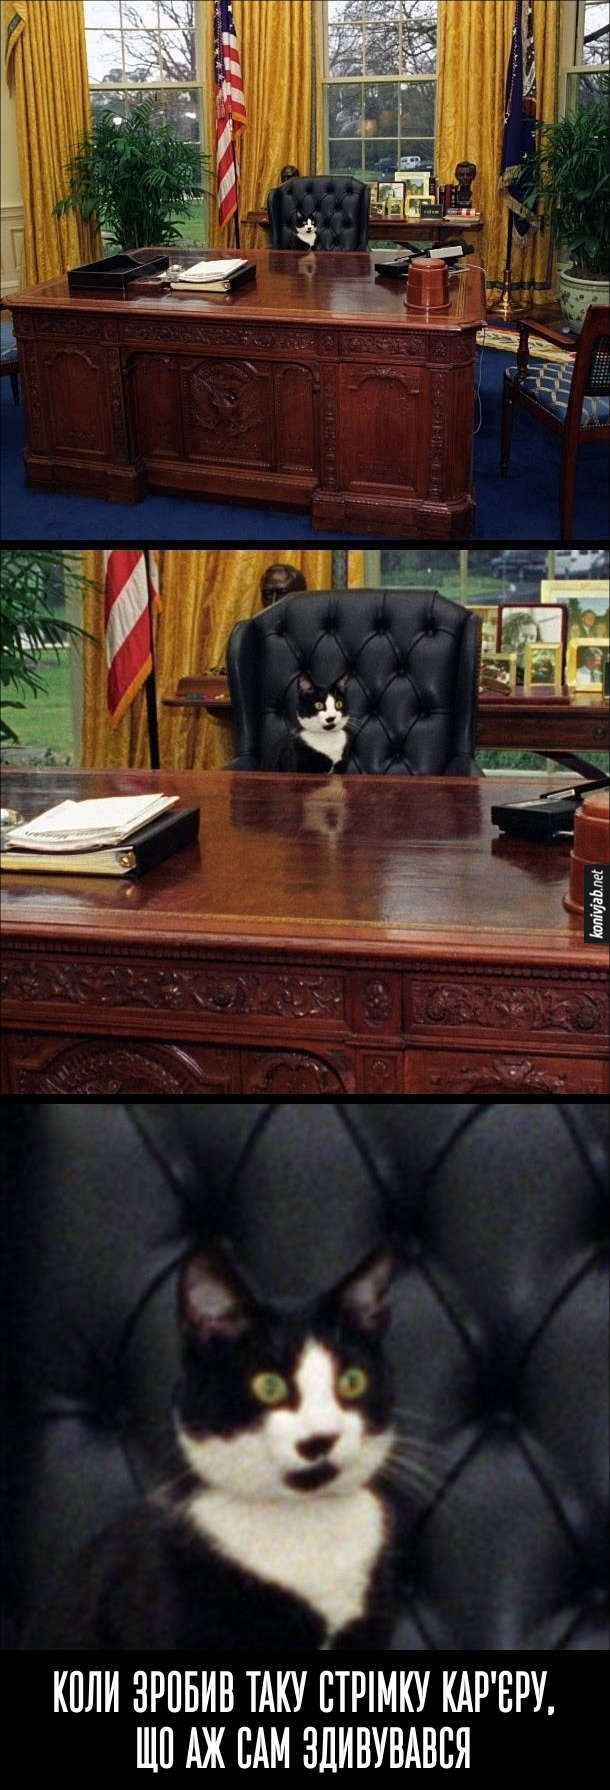 Прикол. Кіт в кріслі президента США. Коли зробив таку стрімку кар'єру, що аж сам здивувався